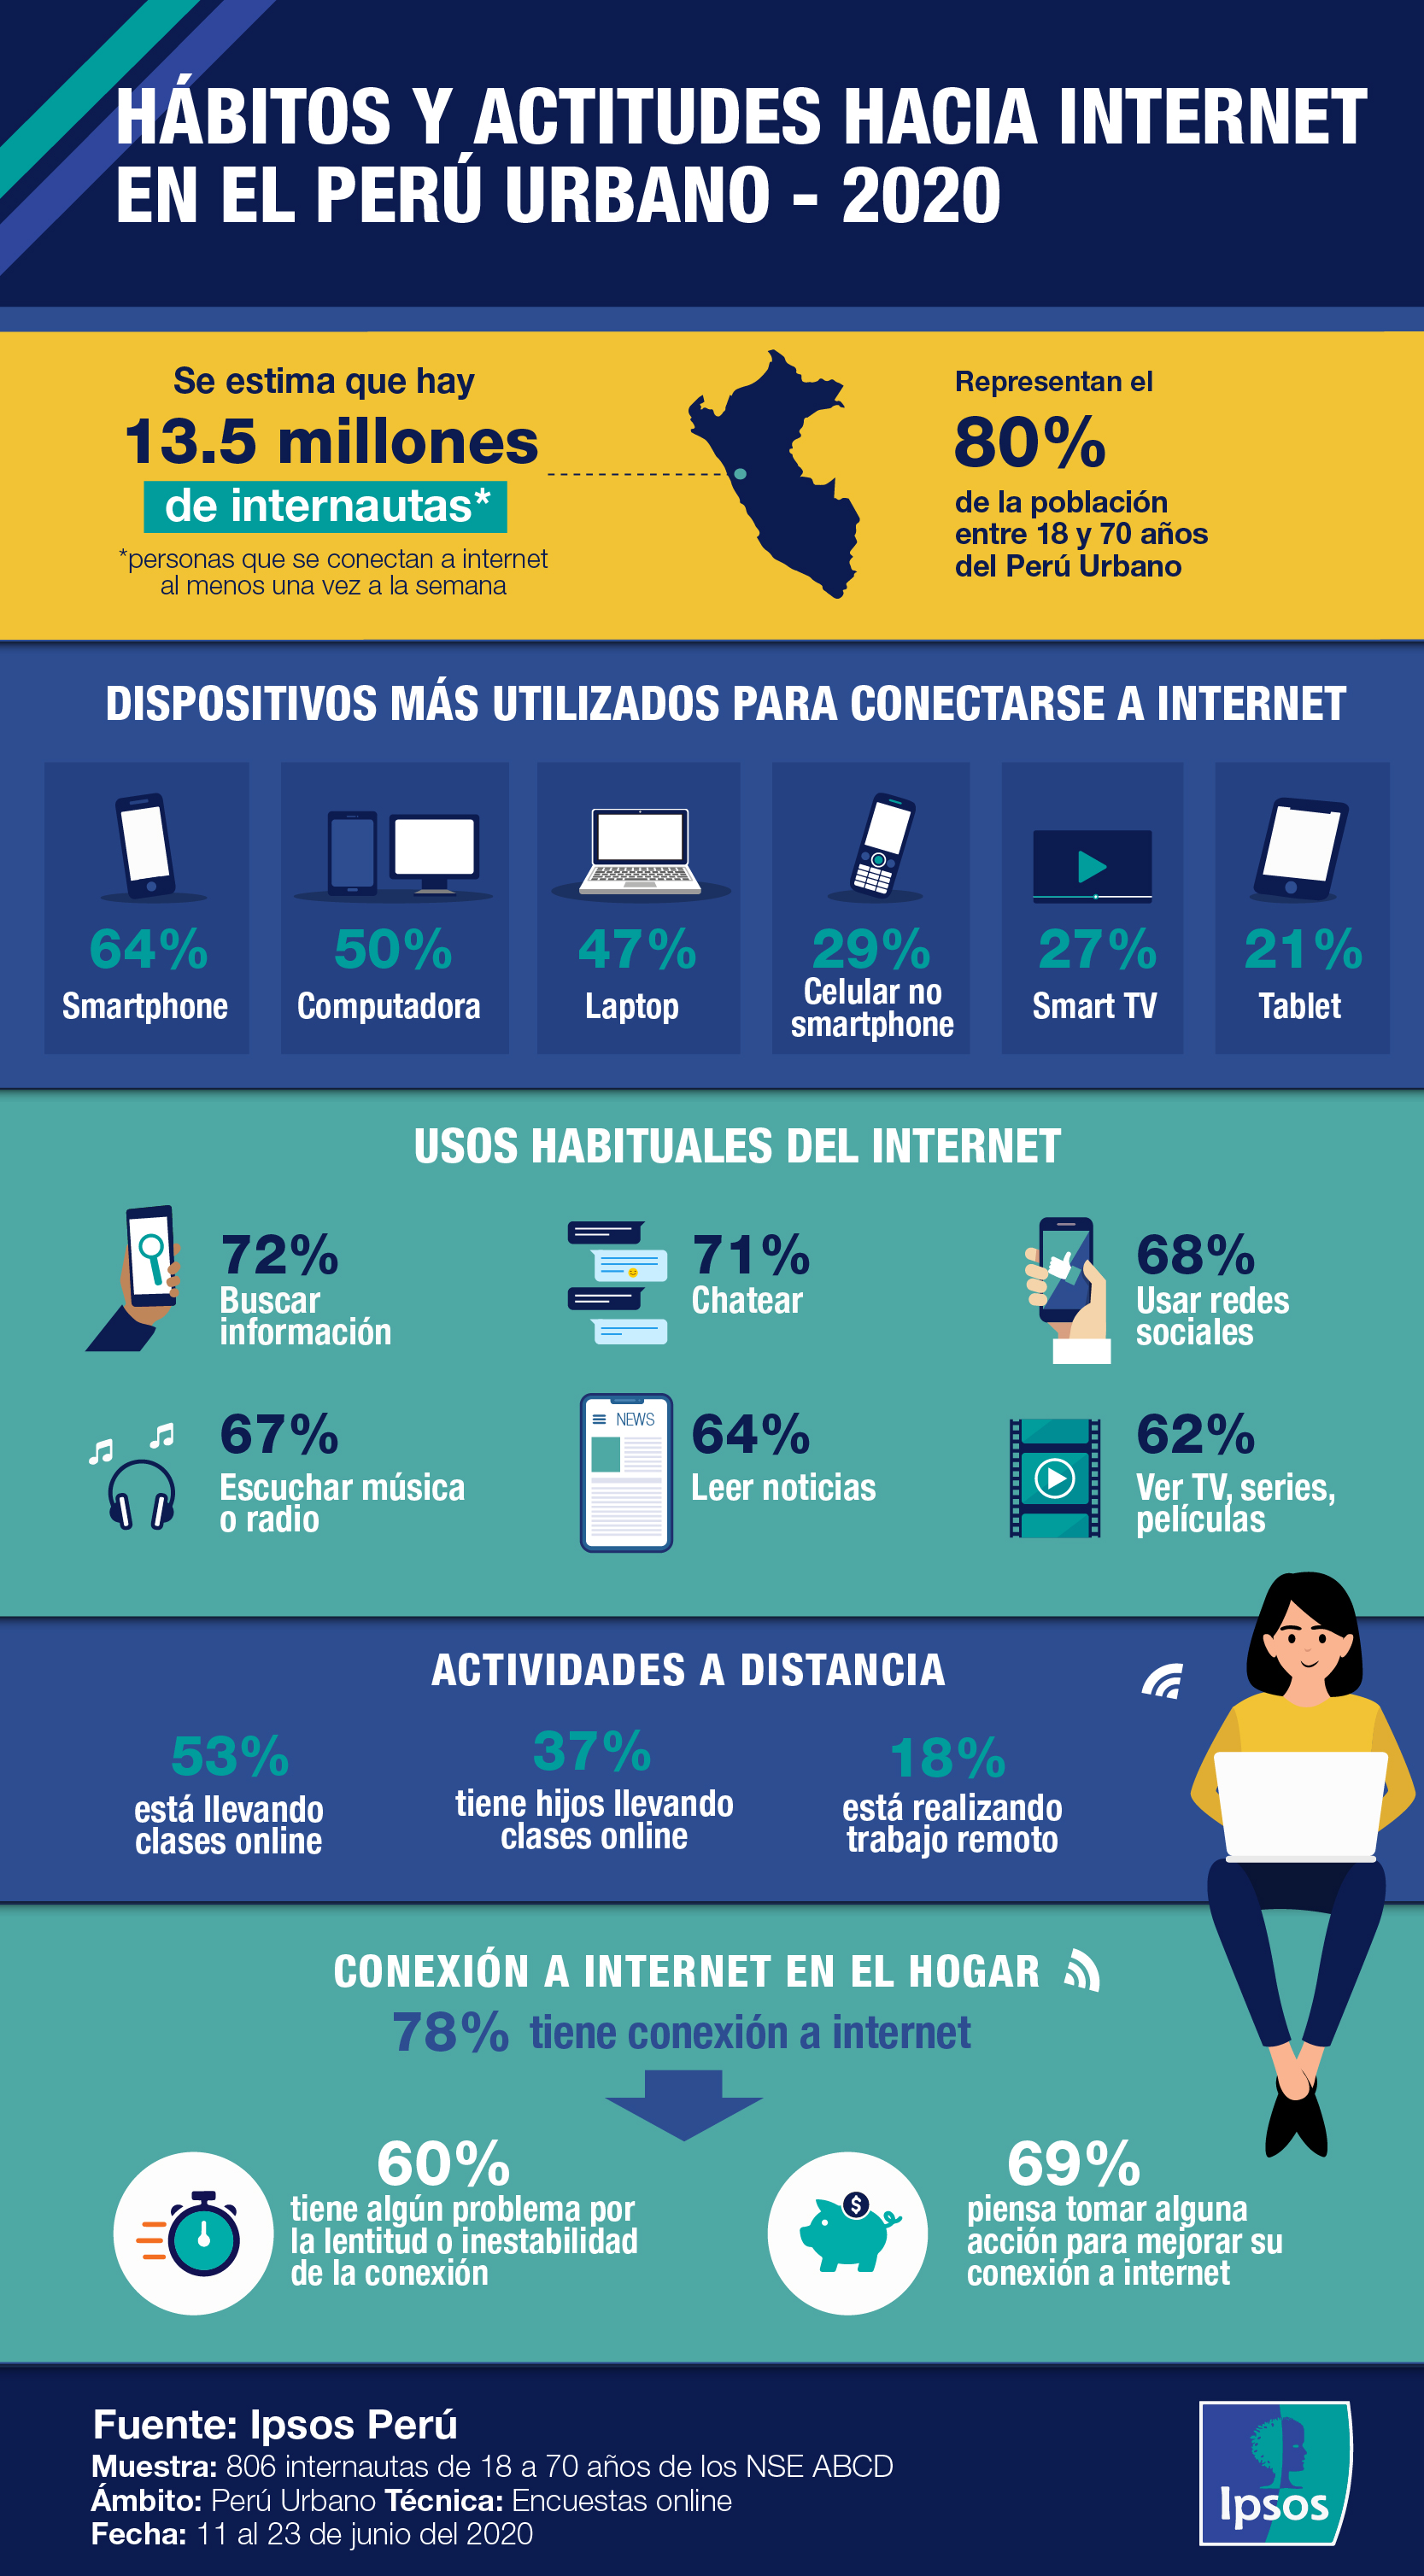 HÁBITOS Y ACTITUDES HACIA INTERNET EN EL PERÚ URBANO - 2020